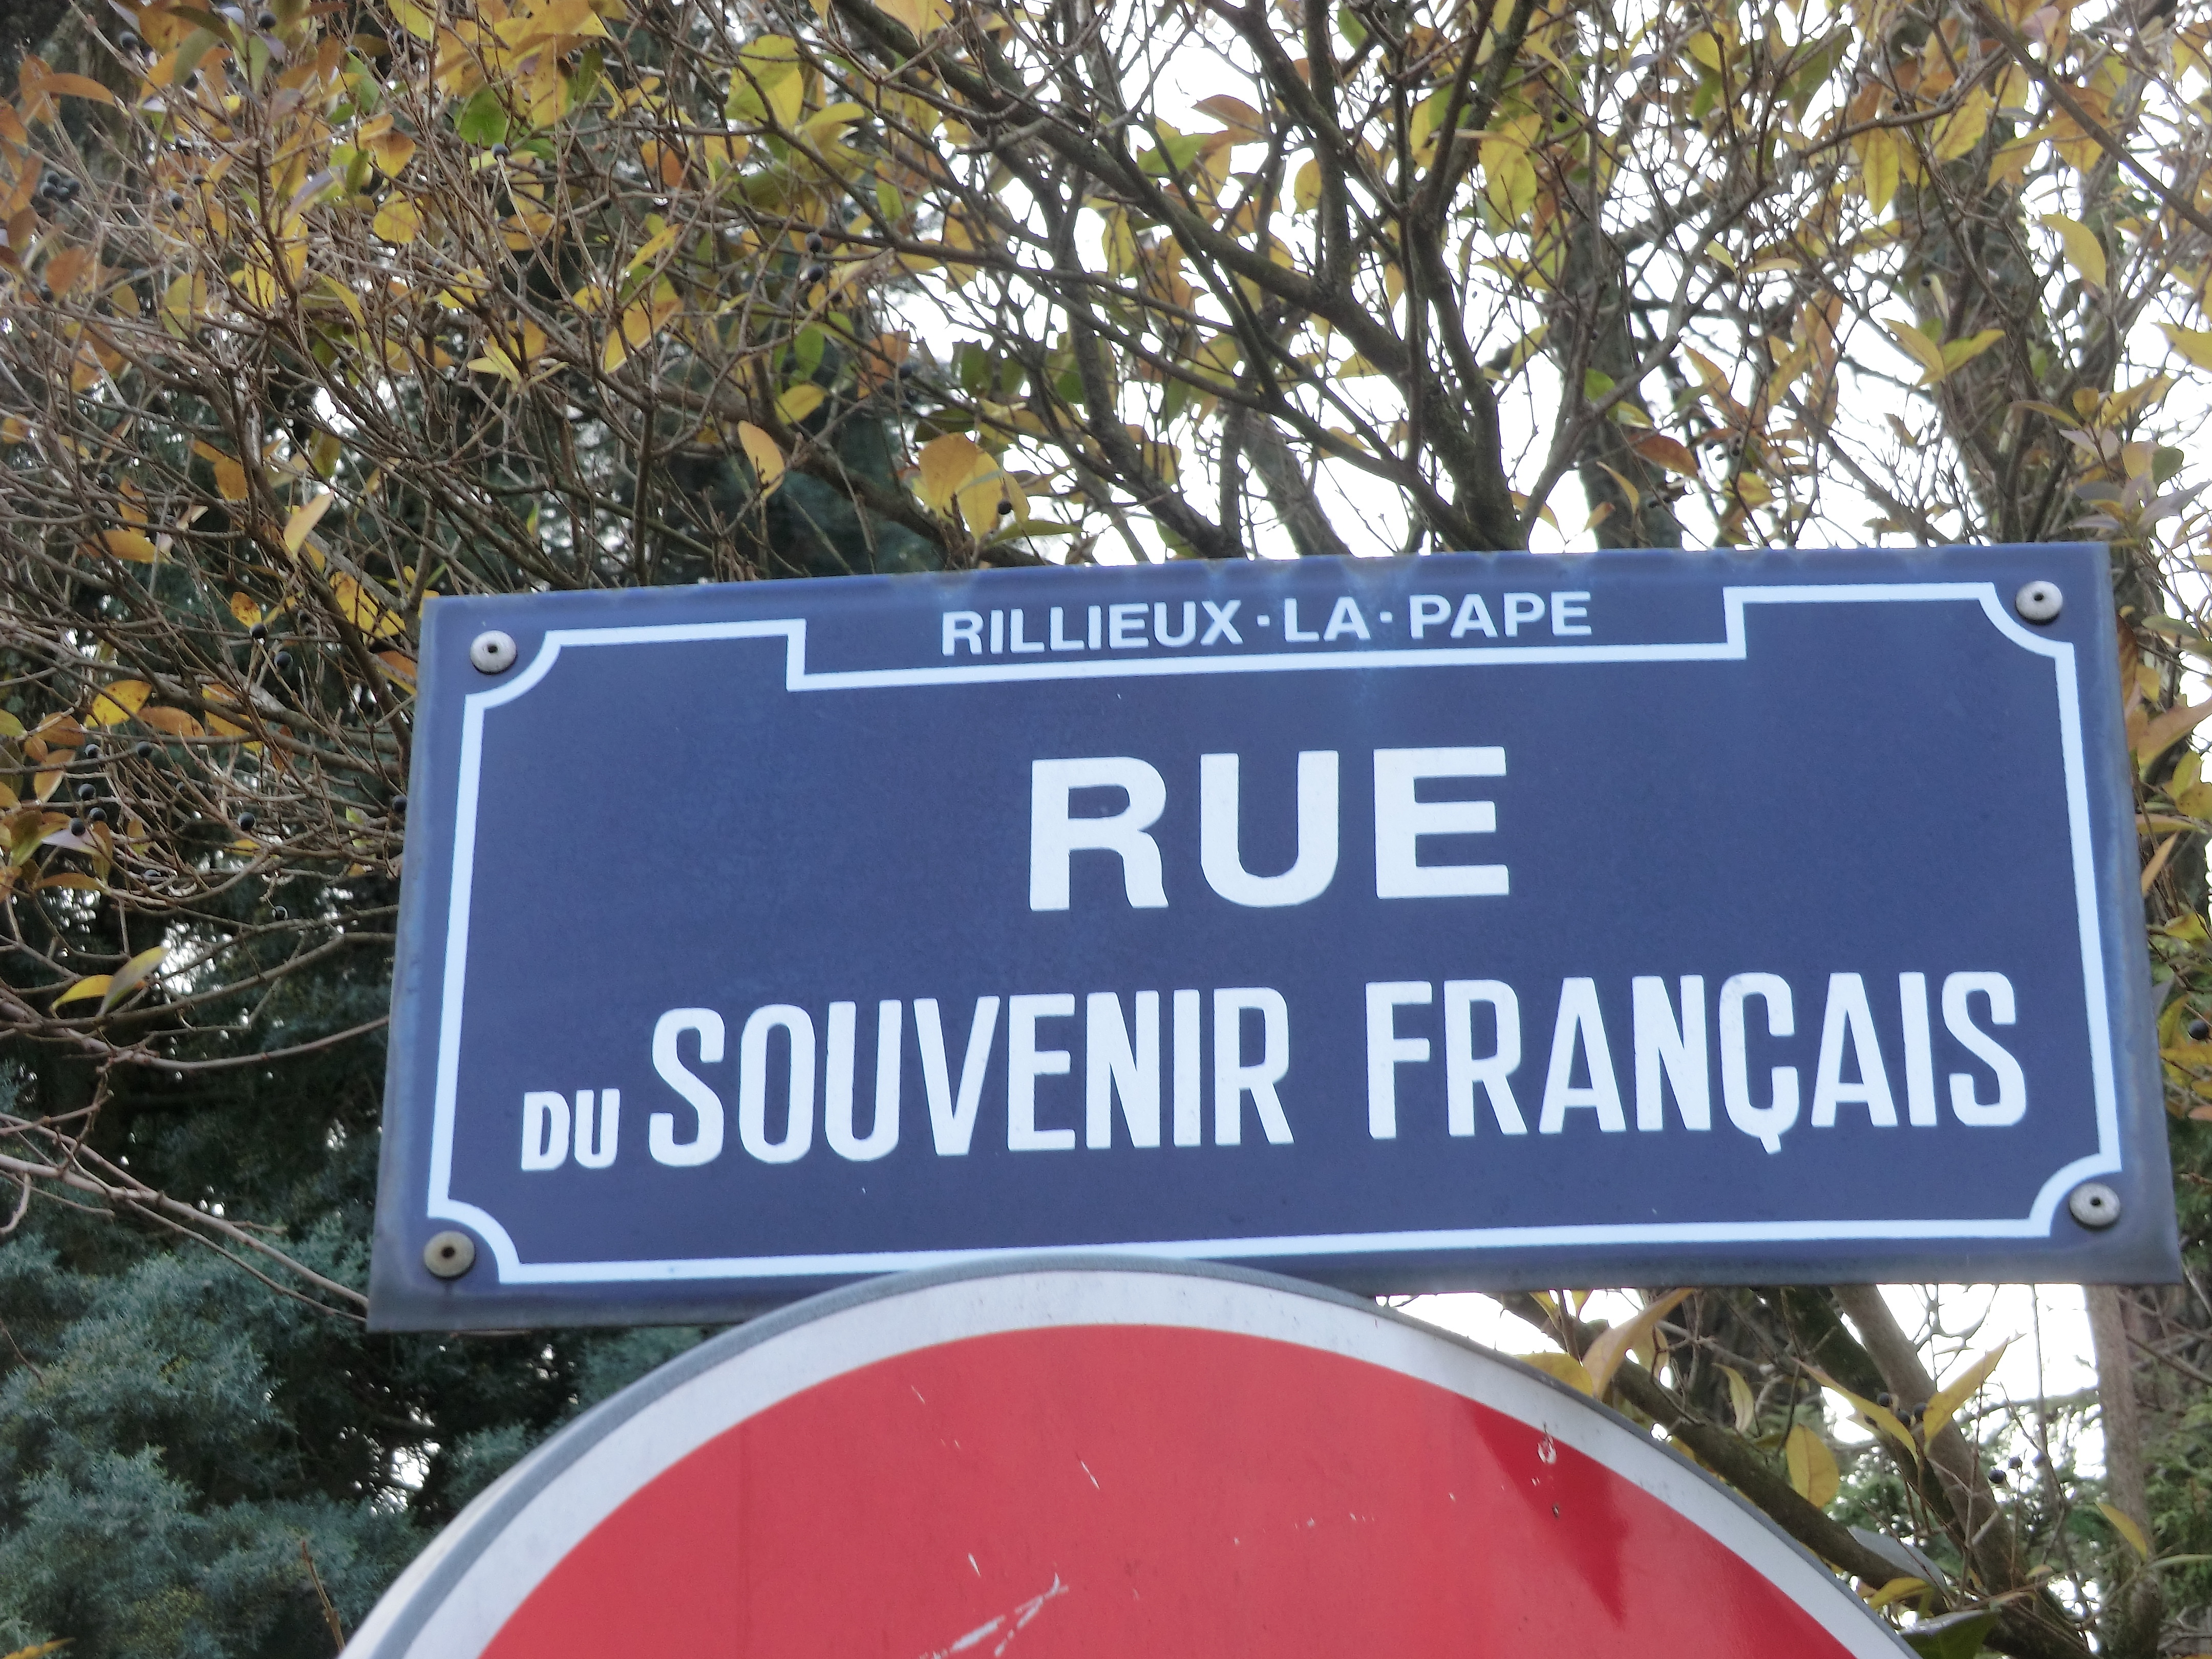 Rillieux-la-Pape (FR) allumeuse